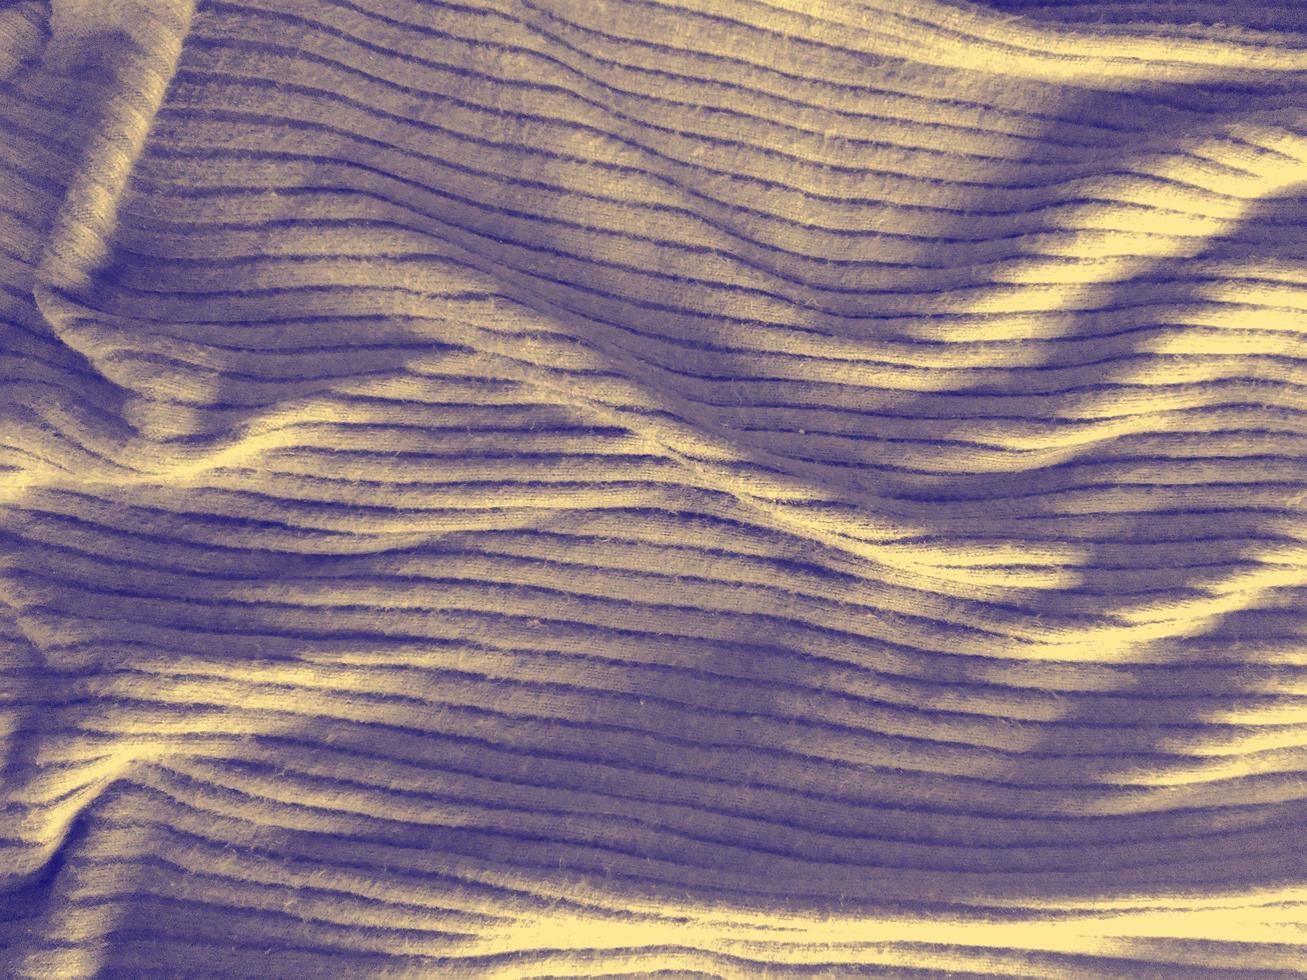 texture de tissu coloré photo